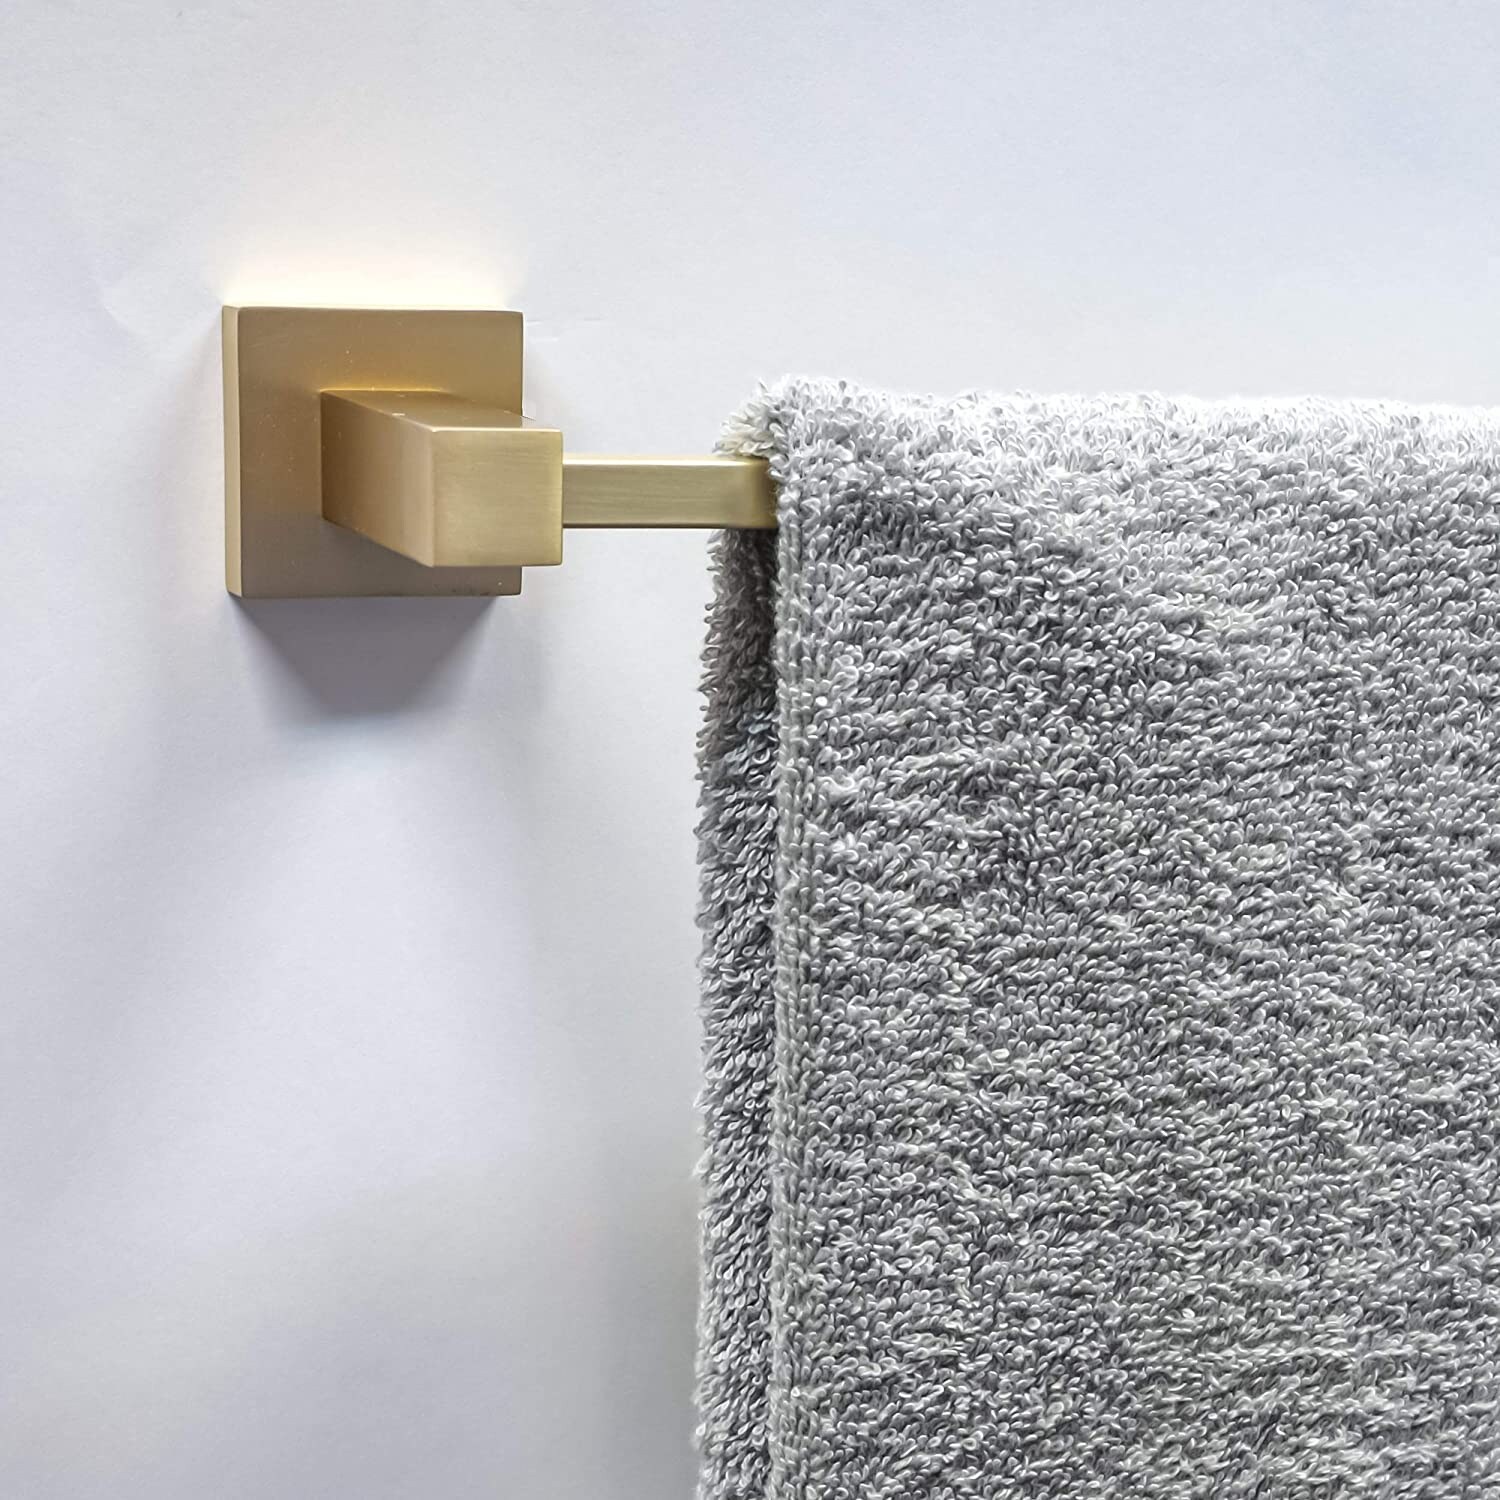 Dyconn Faucet Vienna Series Gold Bathroom Towel Bar (18 Inch)